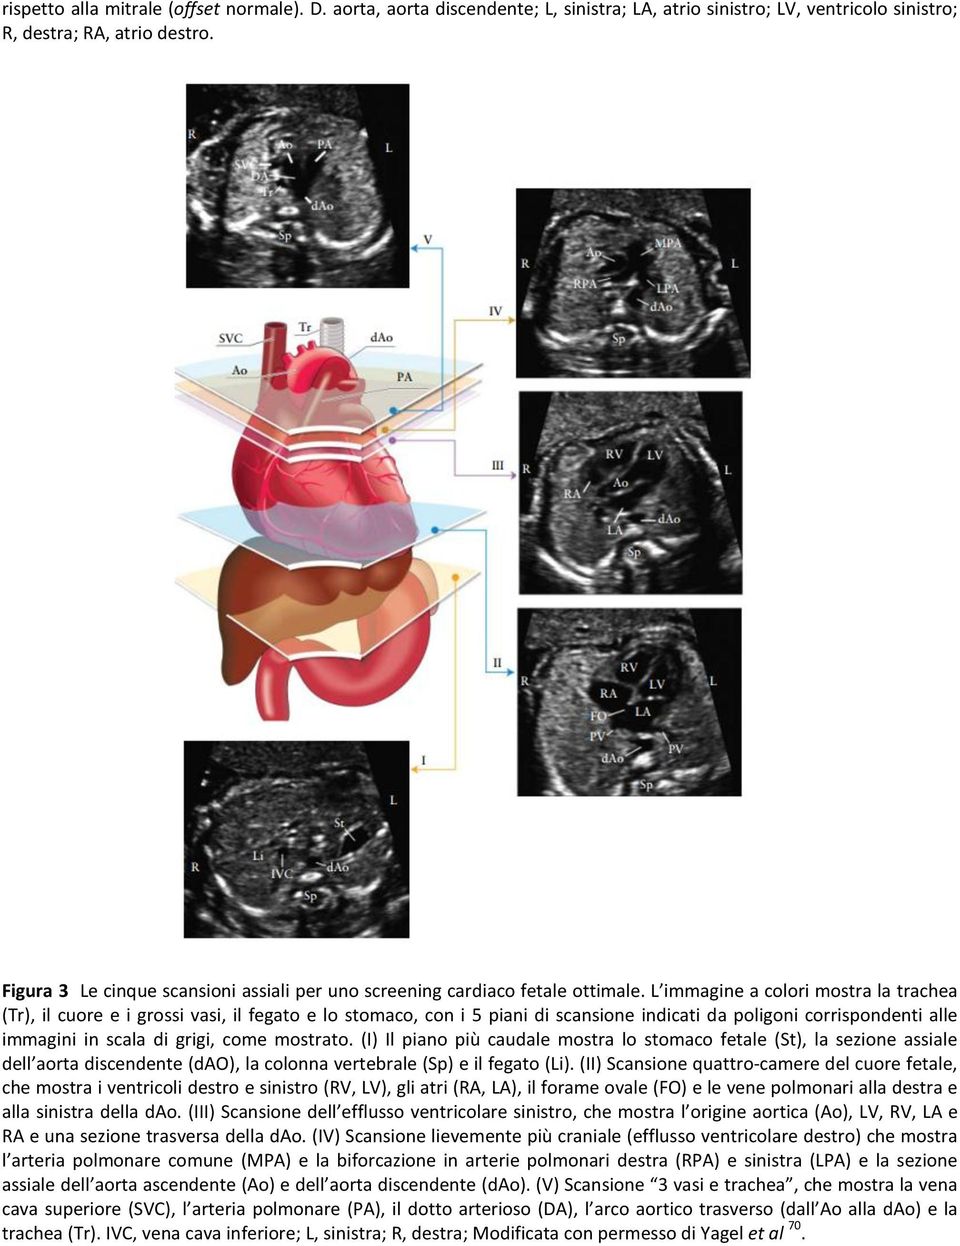 L immagine a colori mostra la trachea (Tr), il cuore e i grossi vasi, il fegato e lo stomaco, con i 5 piani di scansione indicati da poligoni corrispondenti alle immagini in scala di grigi, come